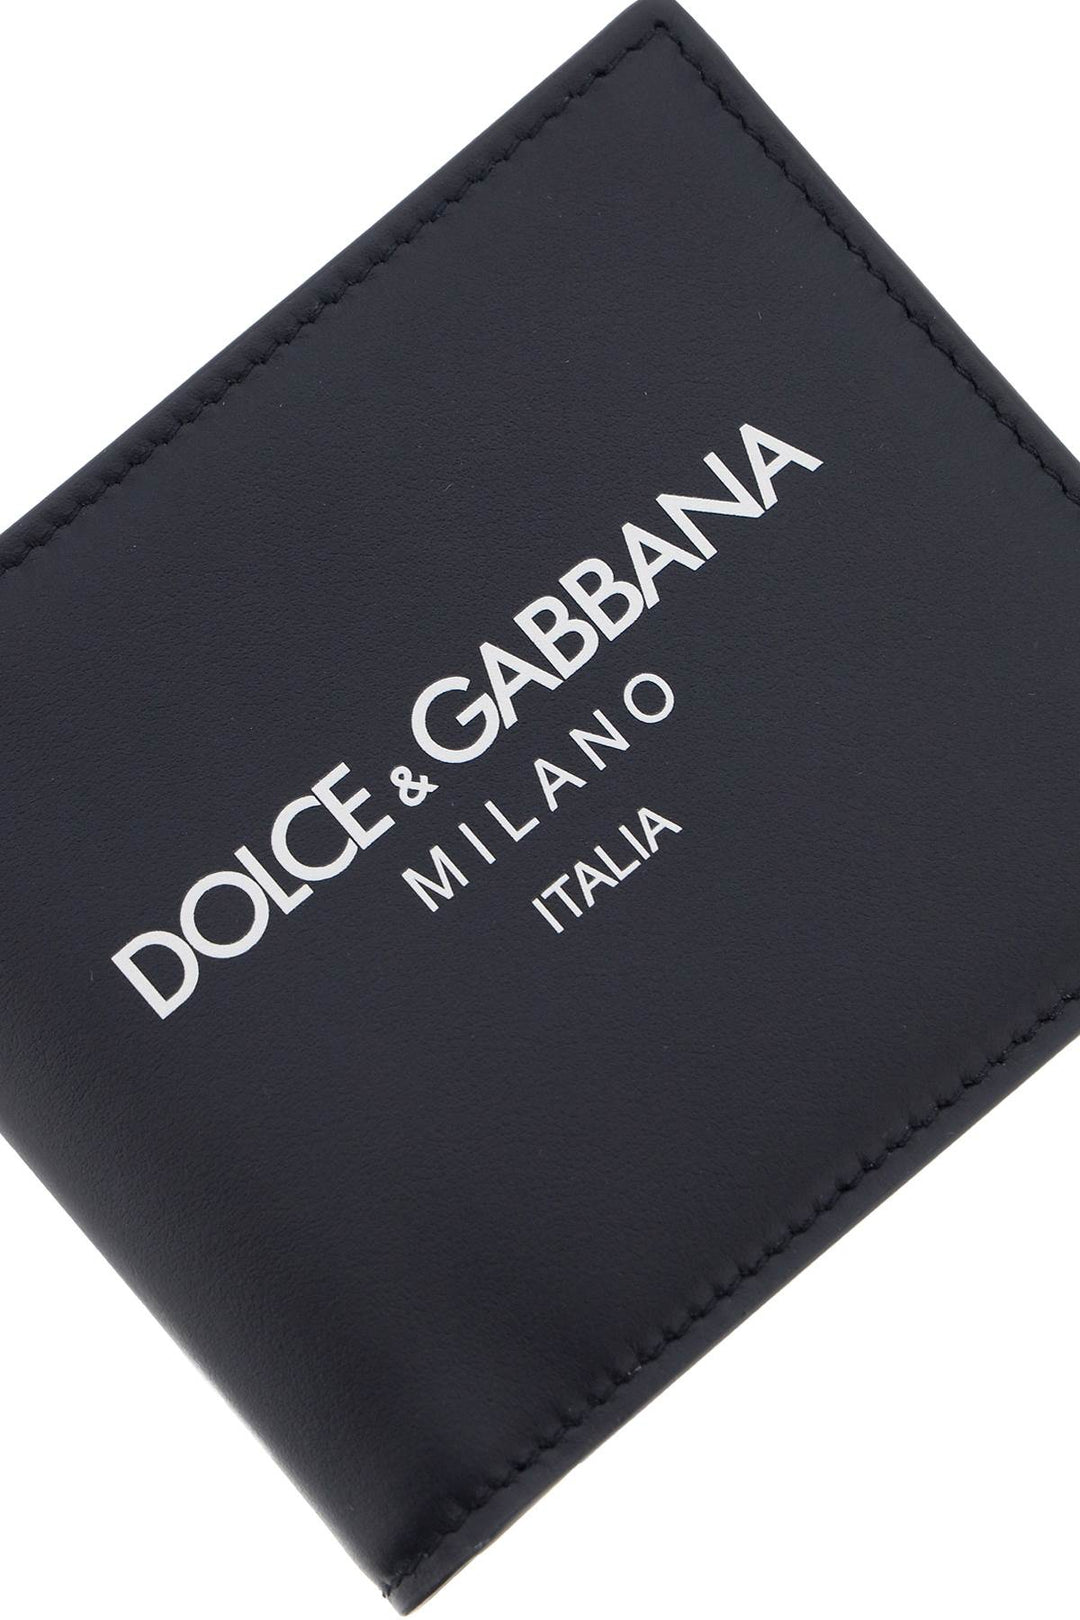 Portafoglio Con Logo - Dolce & Gabbana - Uomo